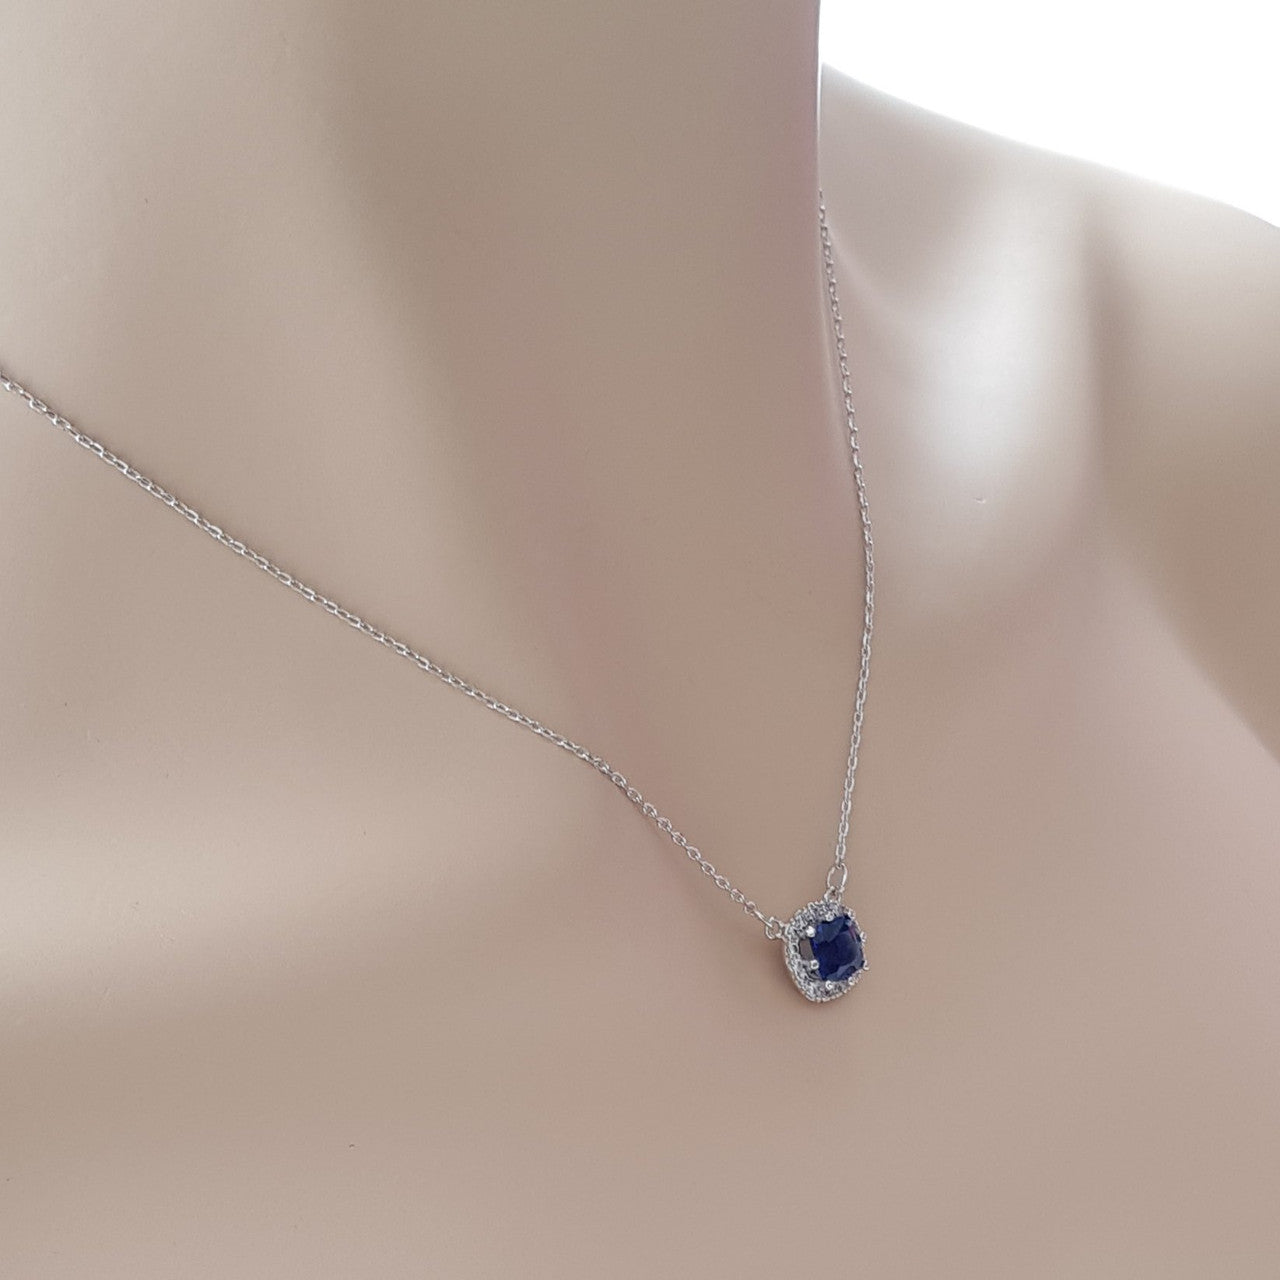 Sapphire Blue Cubic Zirconia Pendant Necklace-Azure